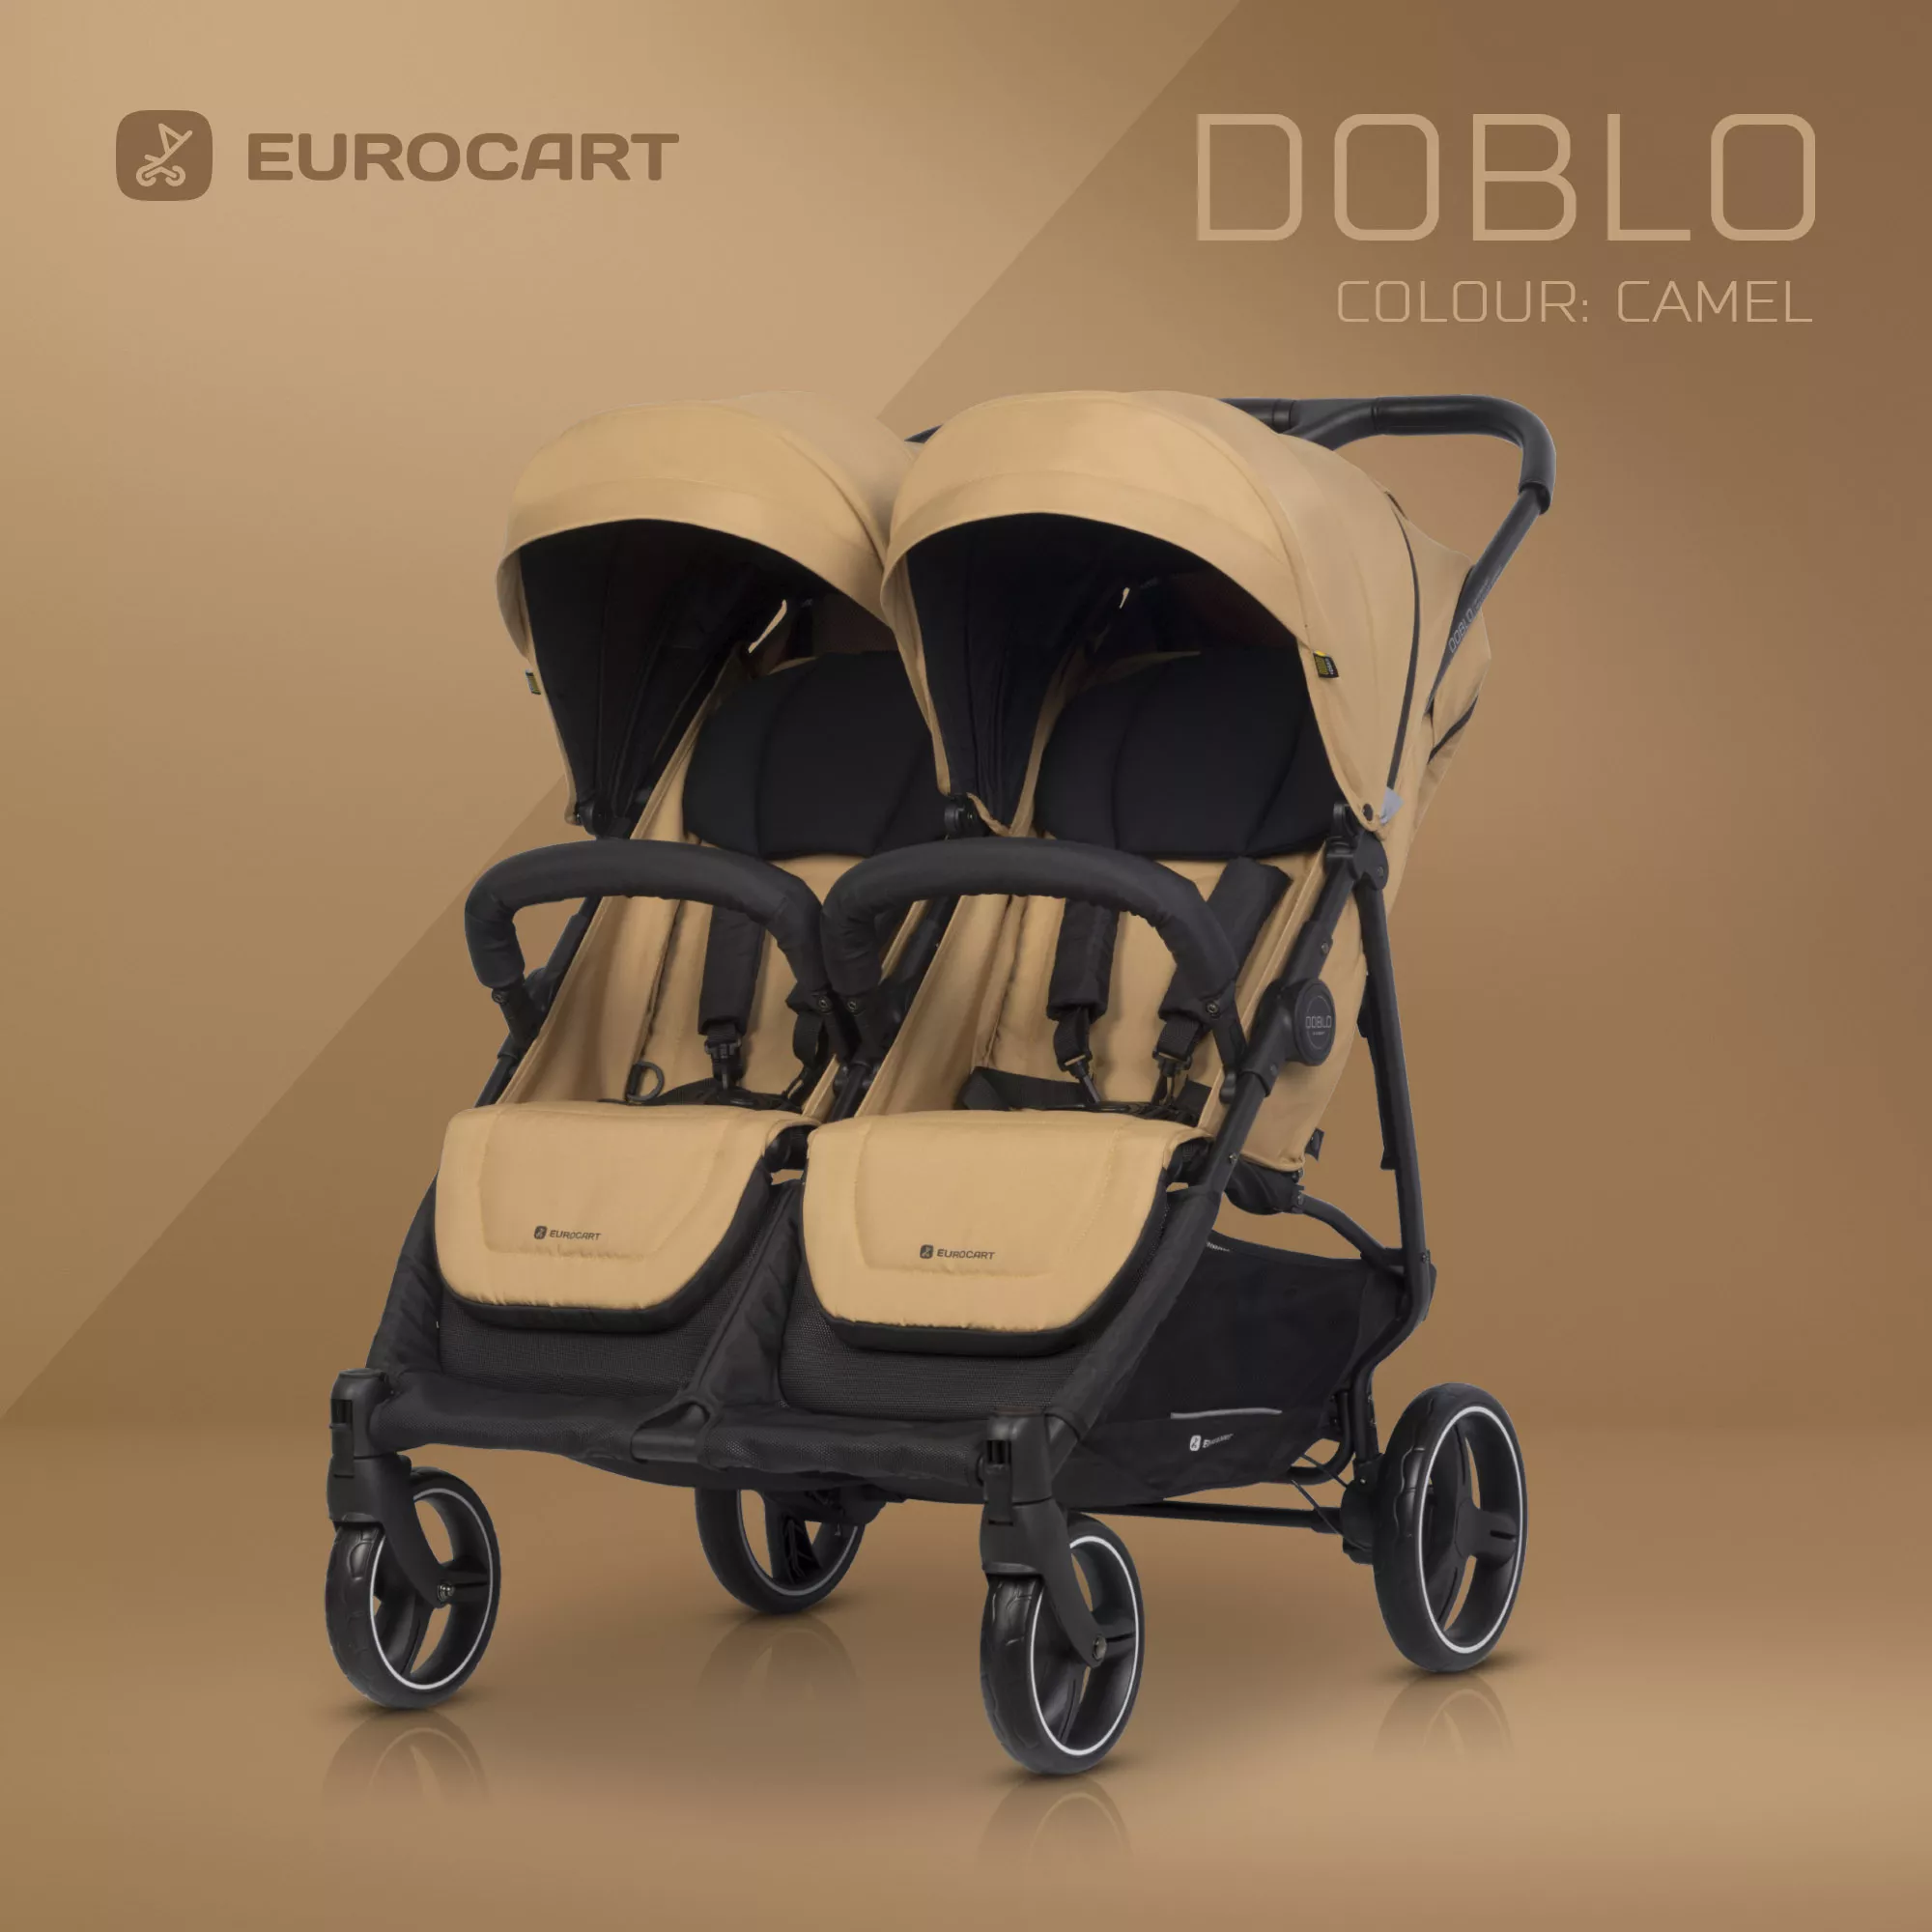 Funkcja Euro-Cart Doblo + Gondola miękka